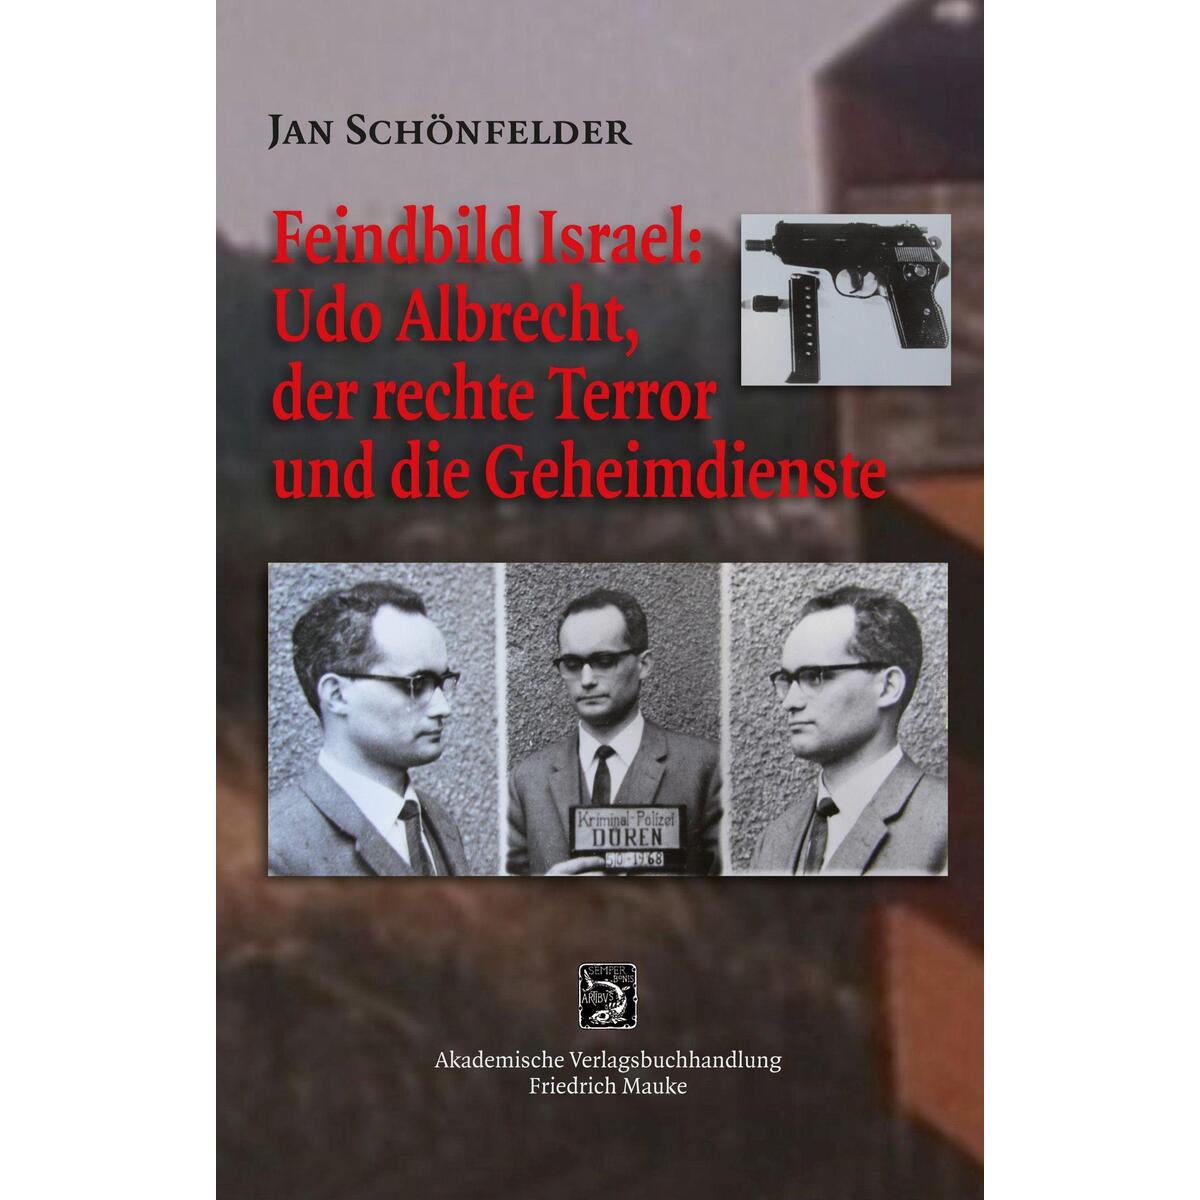 Feindbild Israel: Udo Albrecht, der rechte Terror und die Geheimdienste von Friedrich Mauke KG